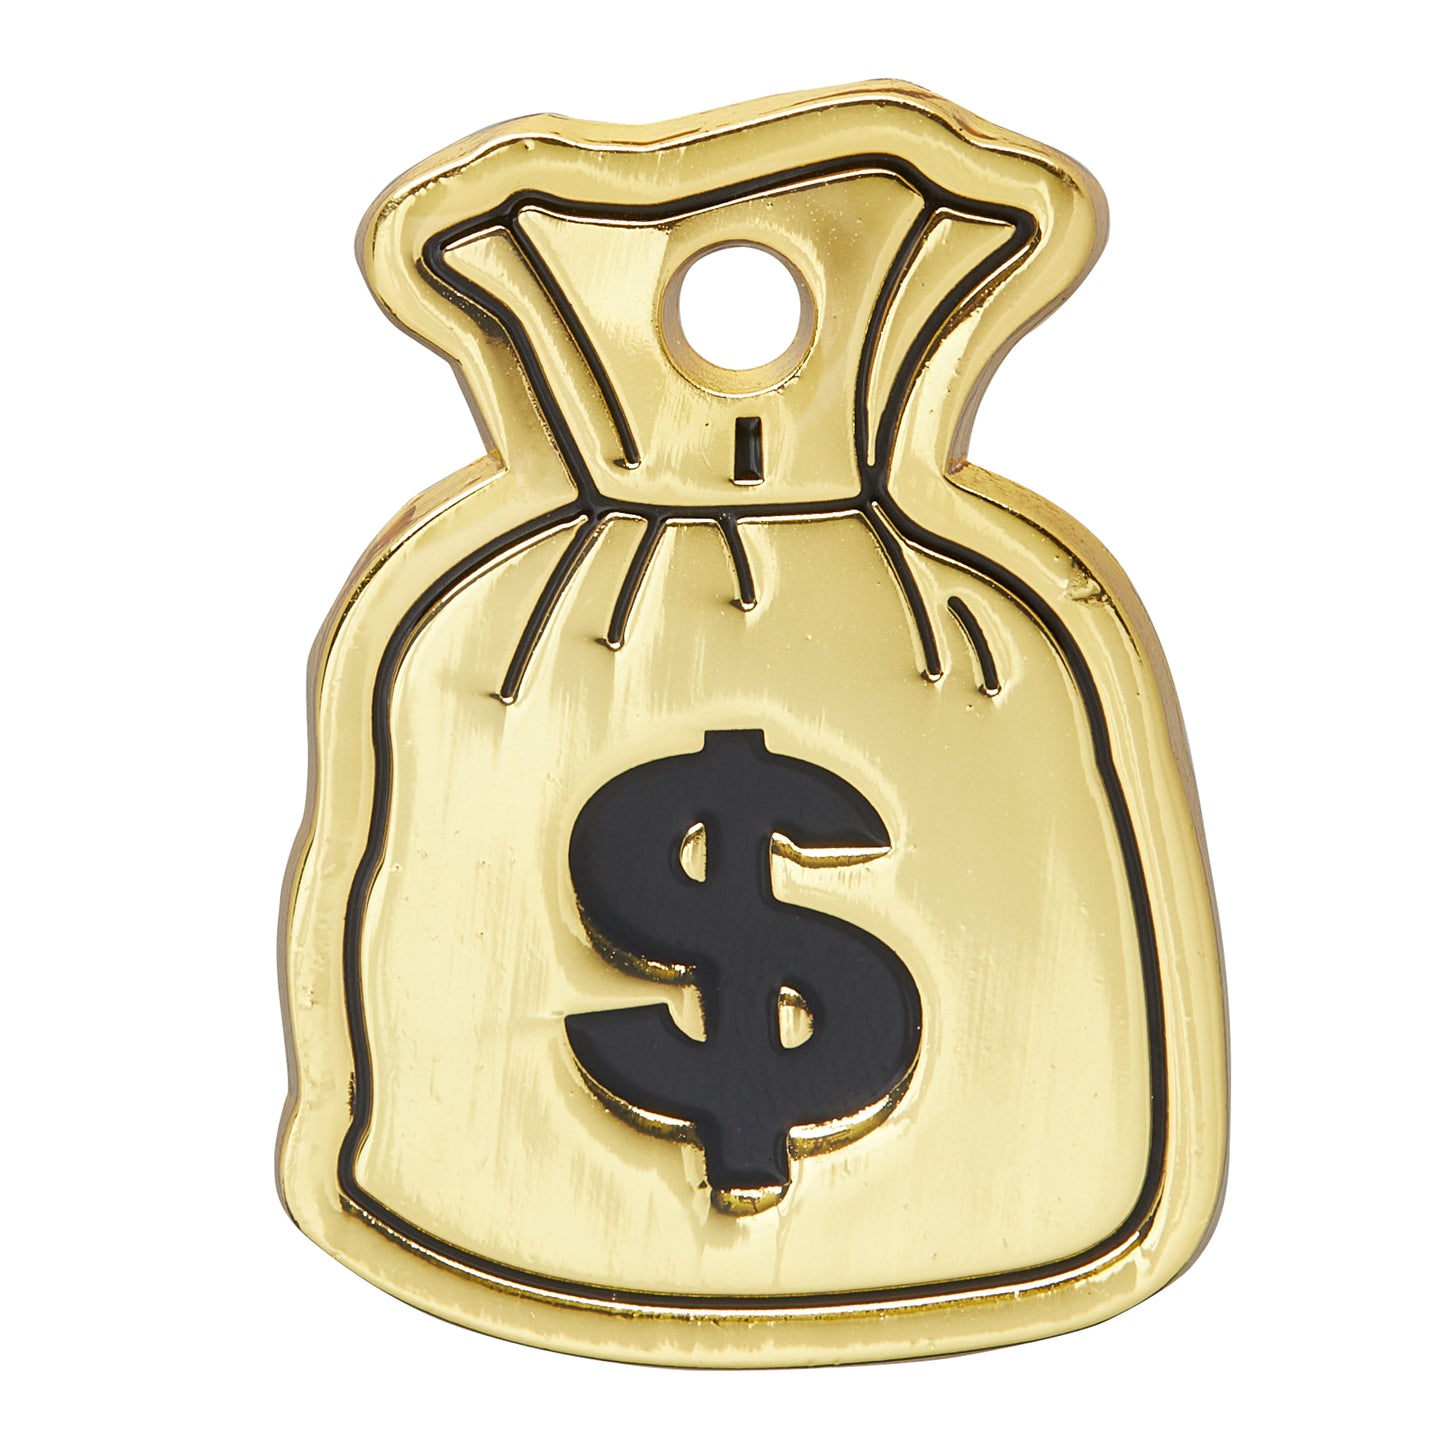 Eylola 6pack 6.3 x 9 Inches Money Bags Money Bag Prop Money India | Ubuy